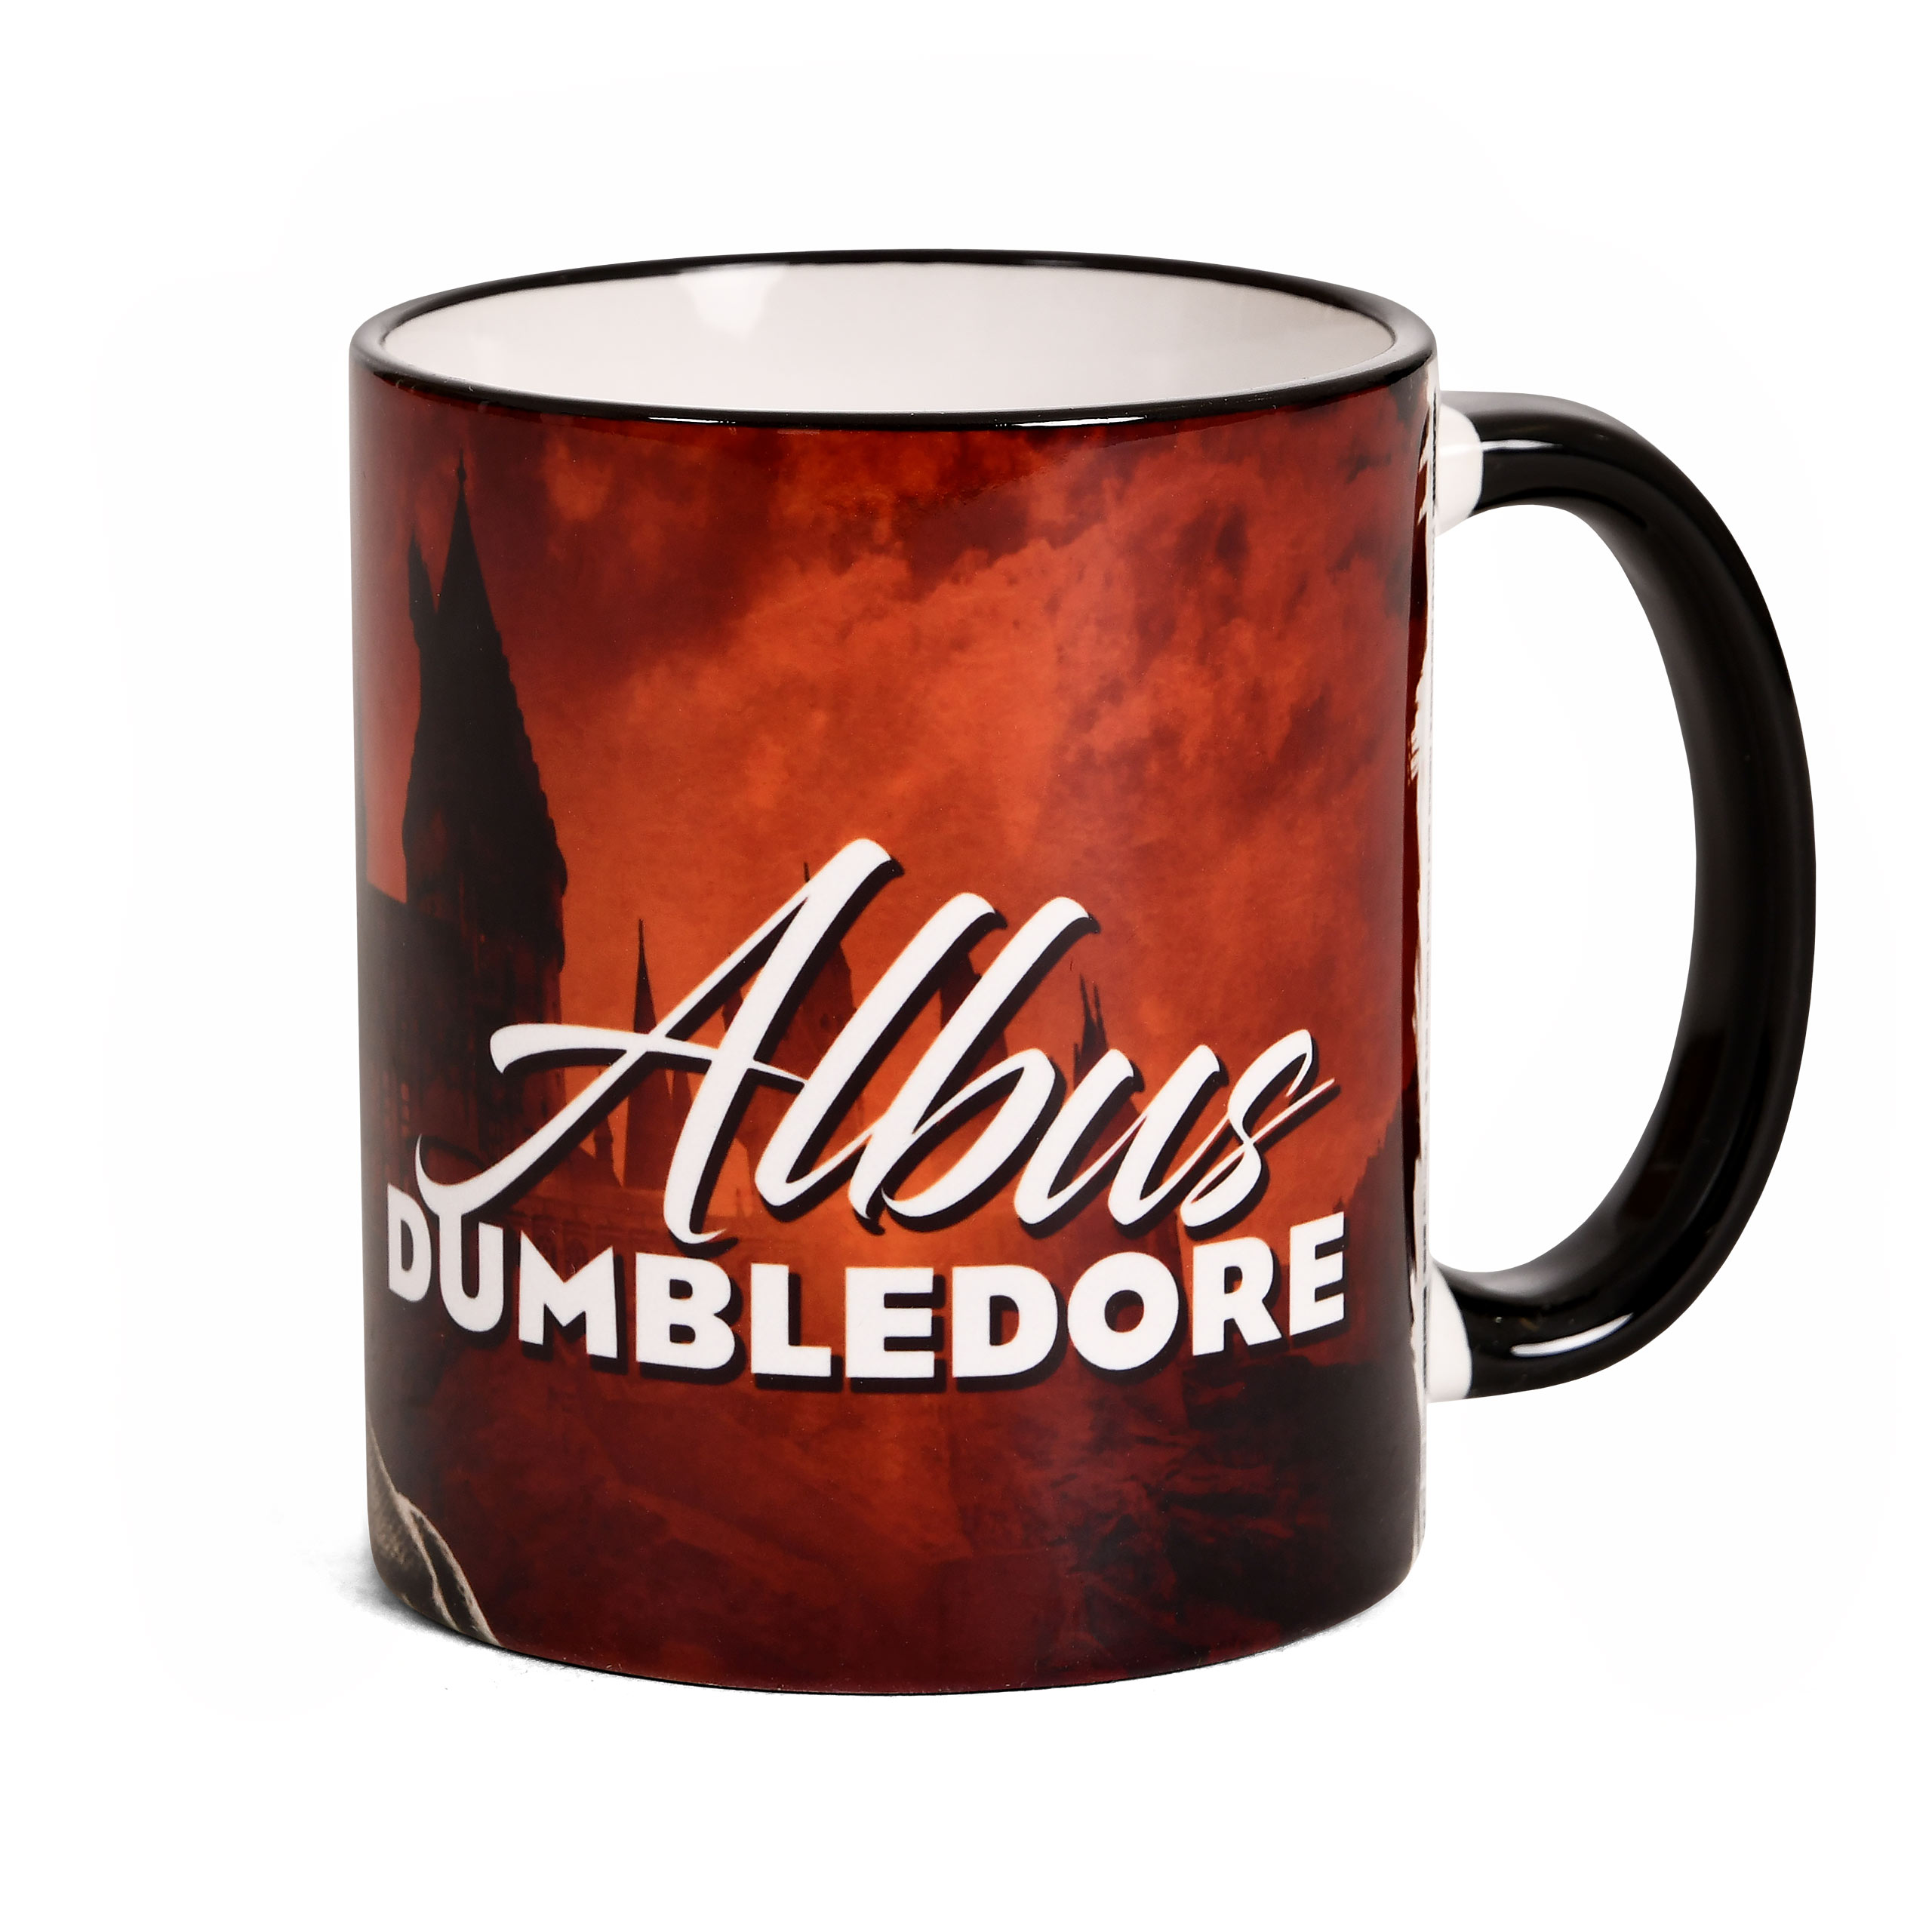 Dumbledore Cup - Fantastic Beasts Dumbledore's Secrets